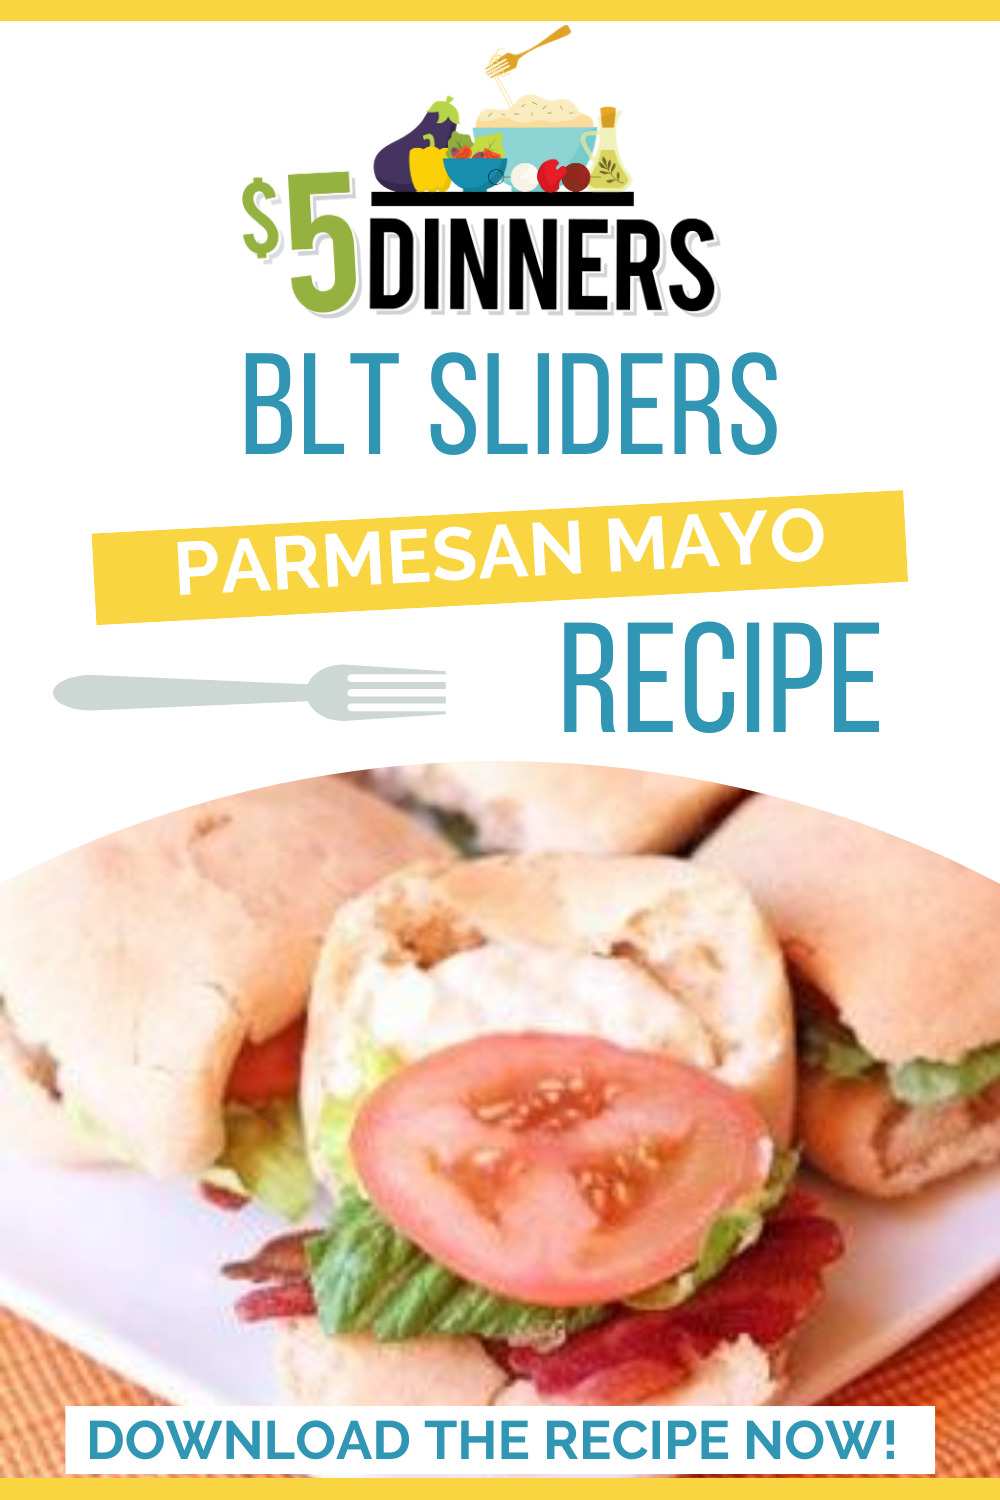 BLT sliders parmesan mayo